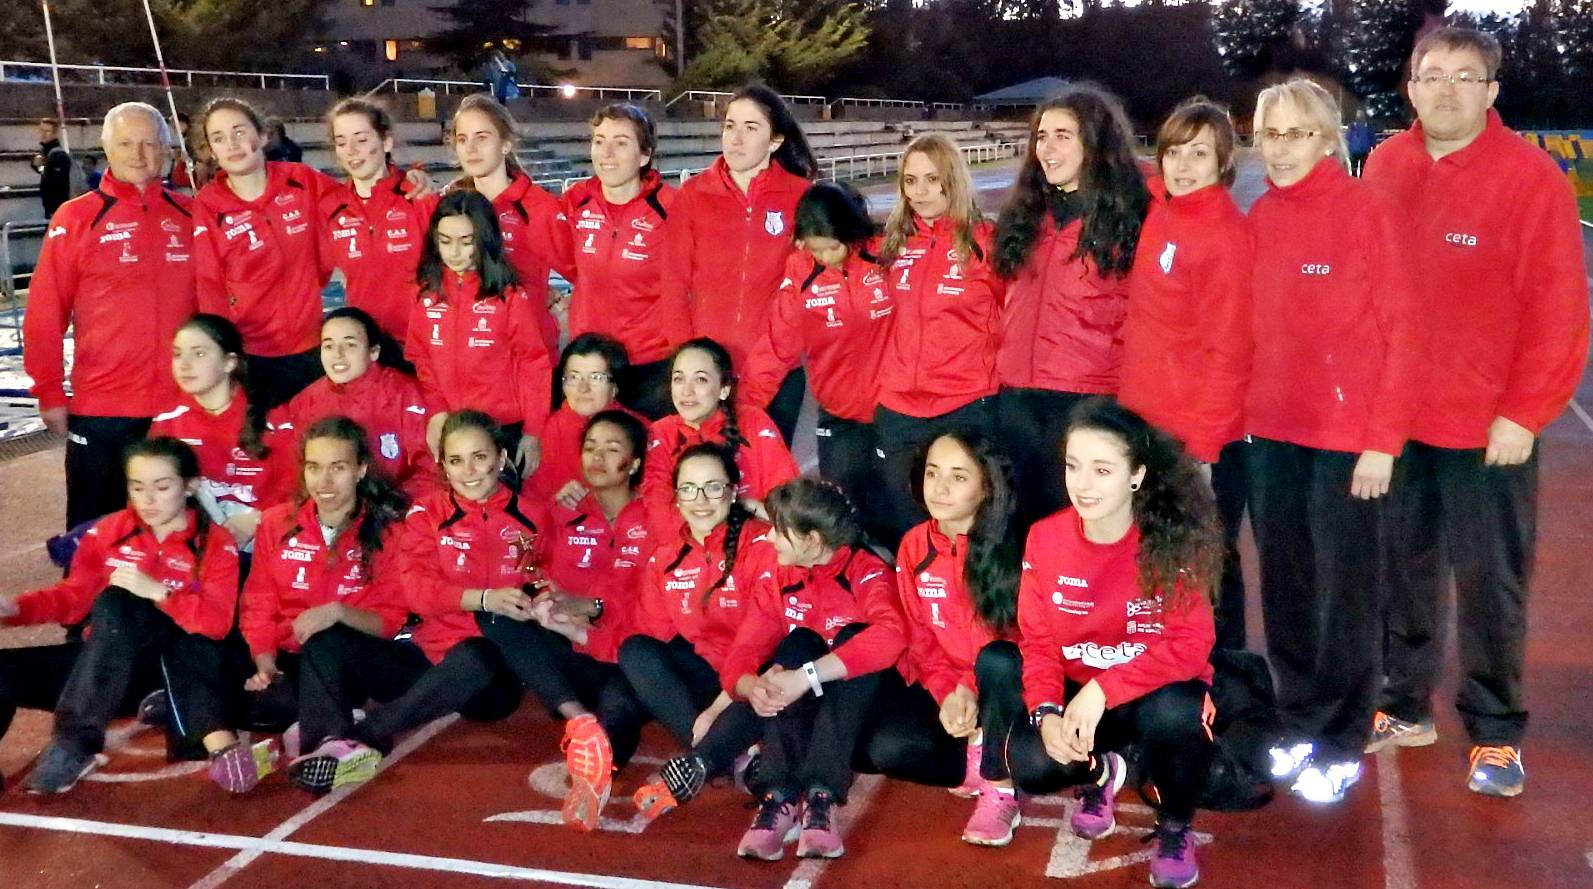 Abierto el plazo de inscripción en la Escuela de Atletismo del CAS-Ciudad de Segovia 16-17